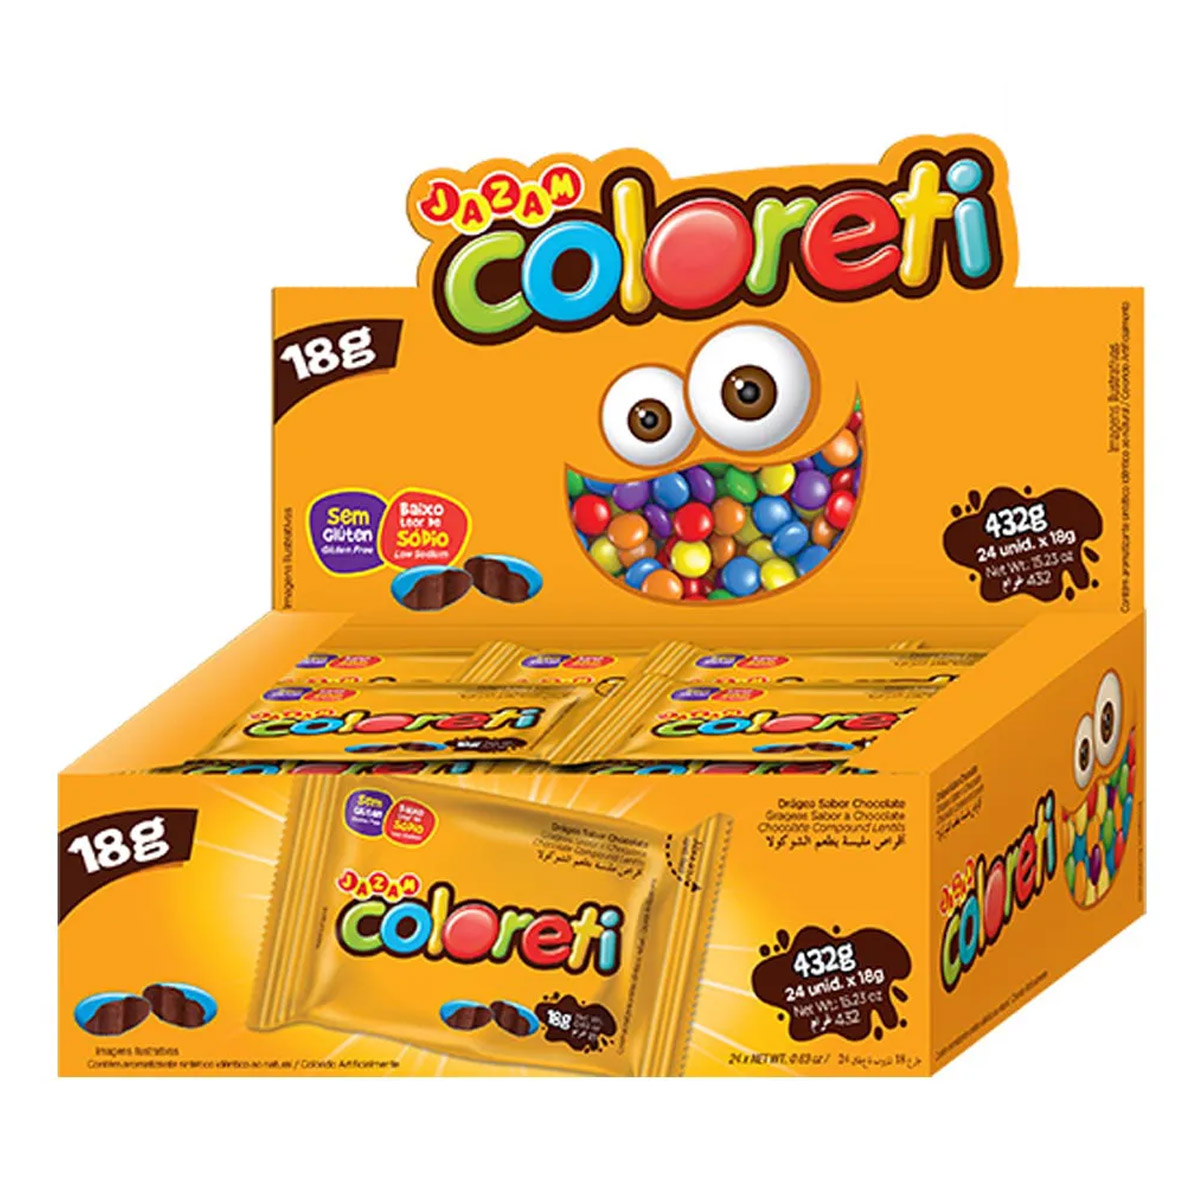 Confete Chocolate Coloreti Colorido - 432g